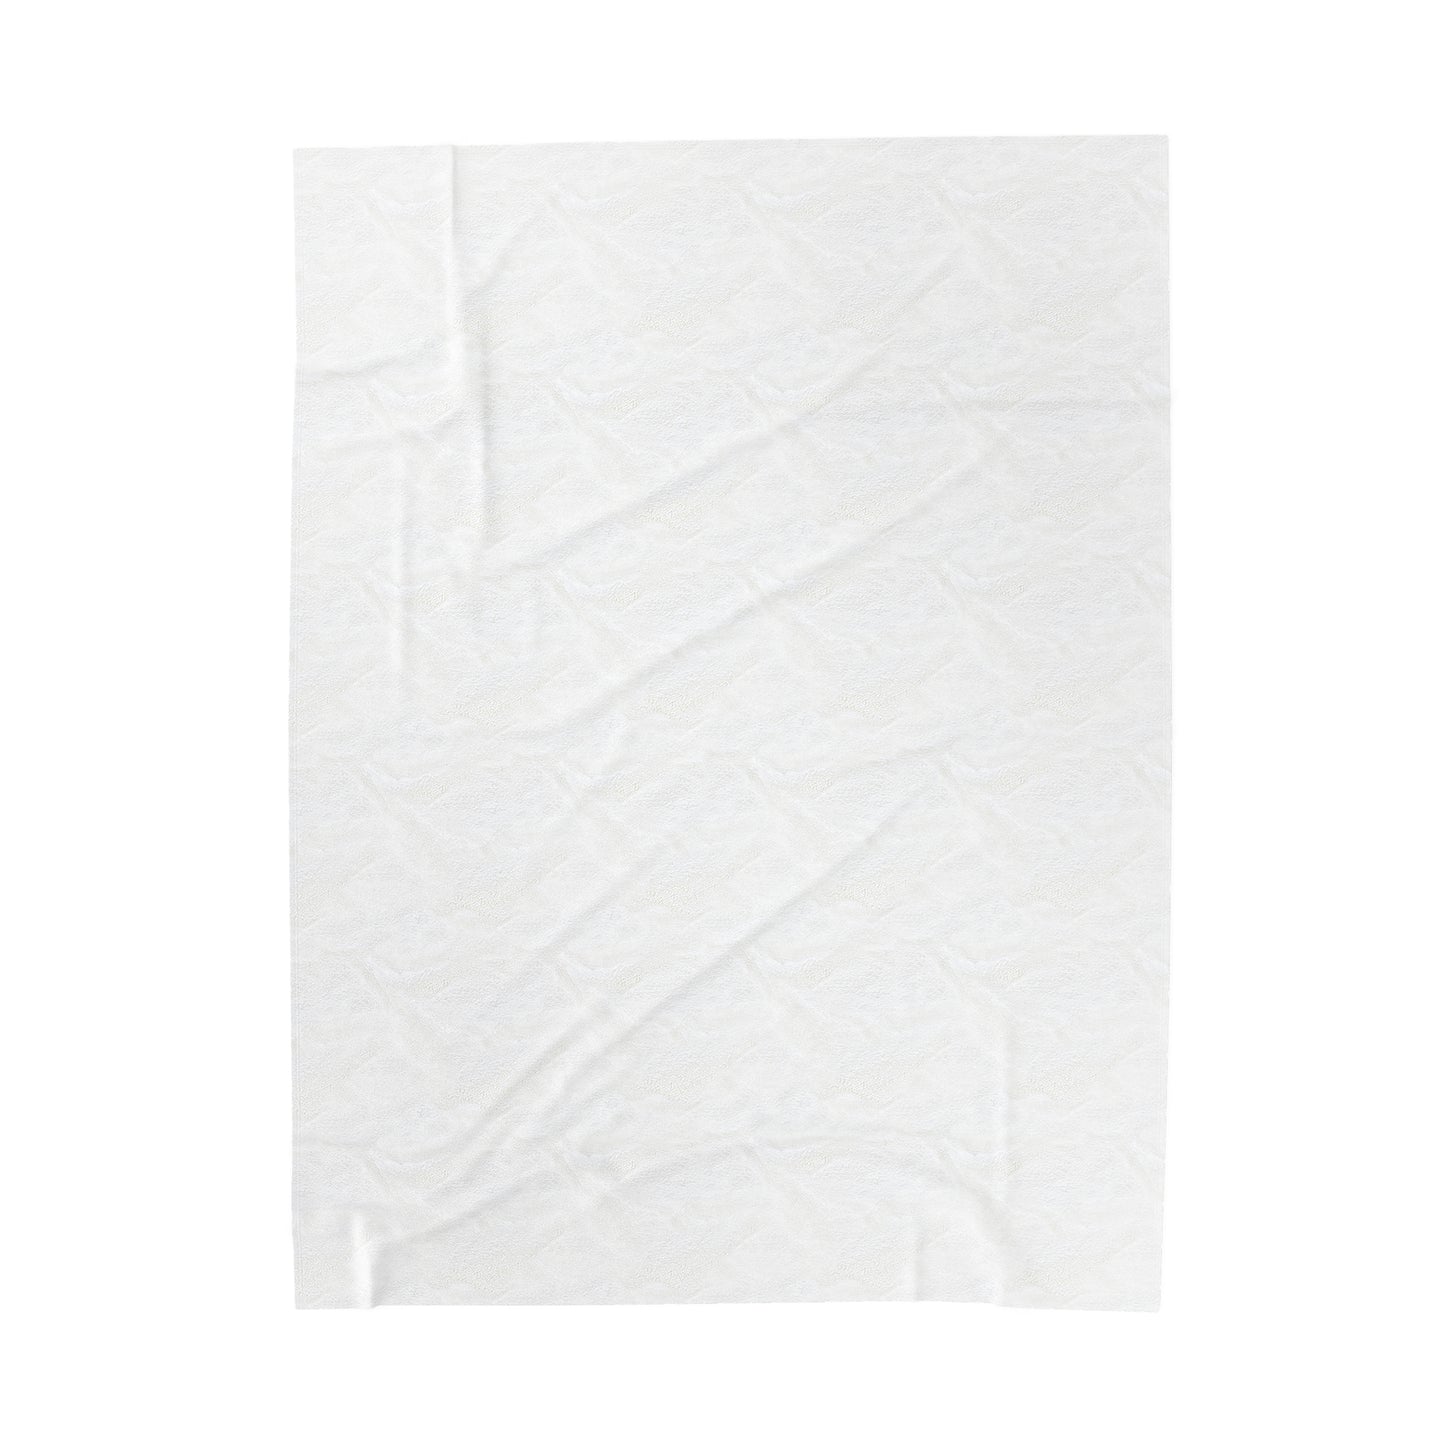 Queen Sized (60x80) Velveteen Plush Blanket - White